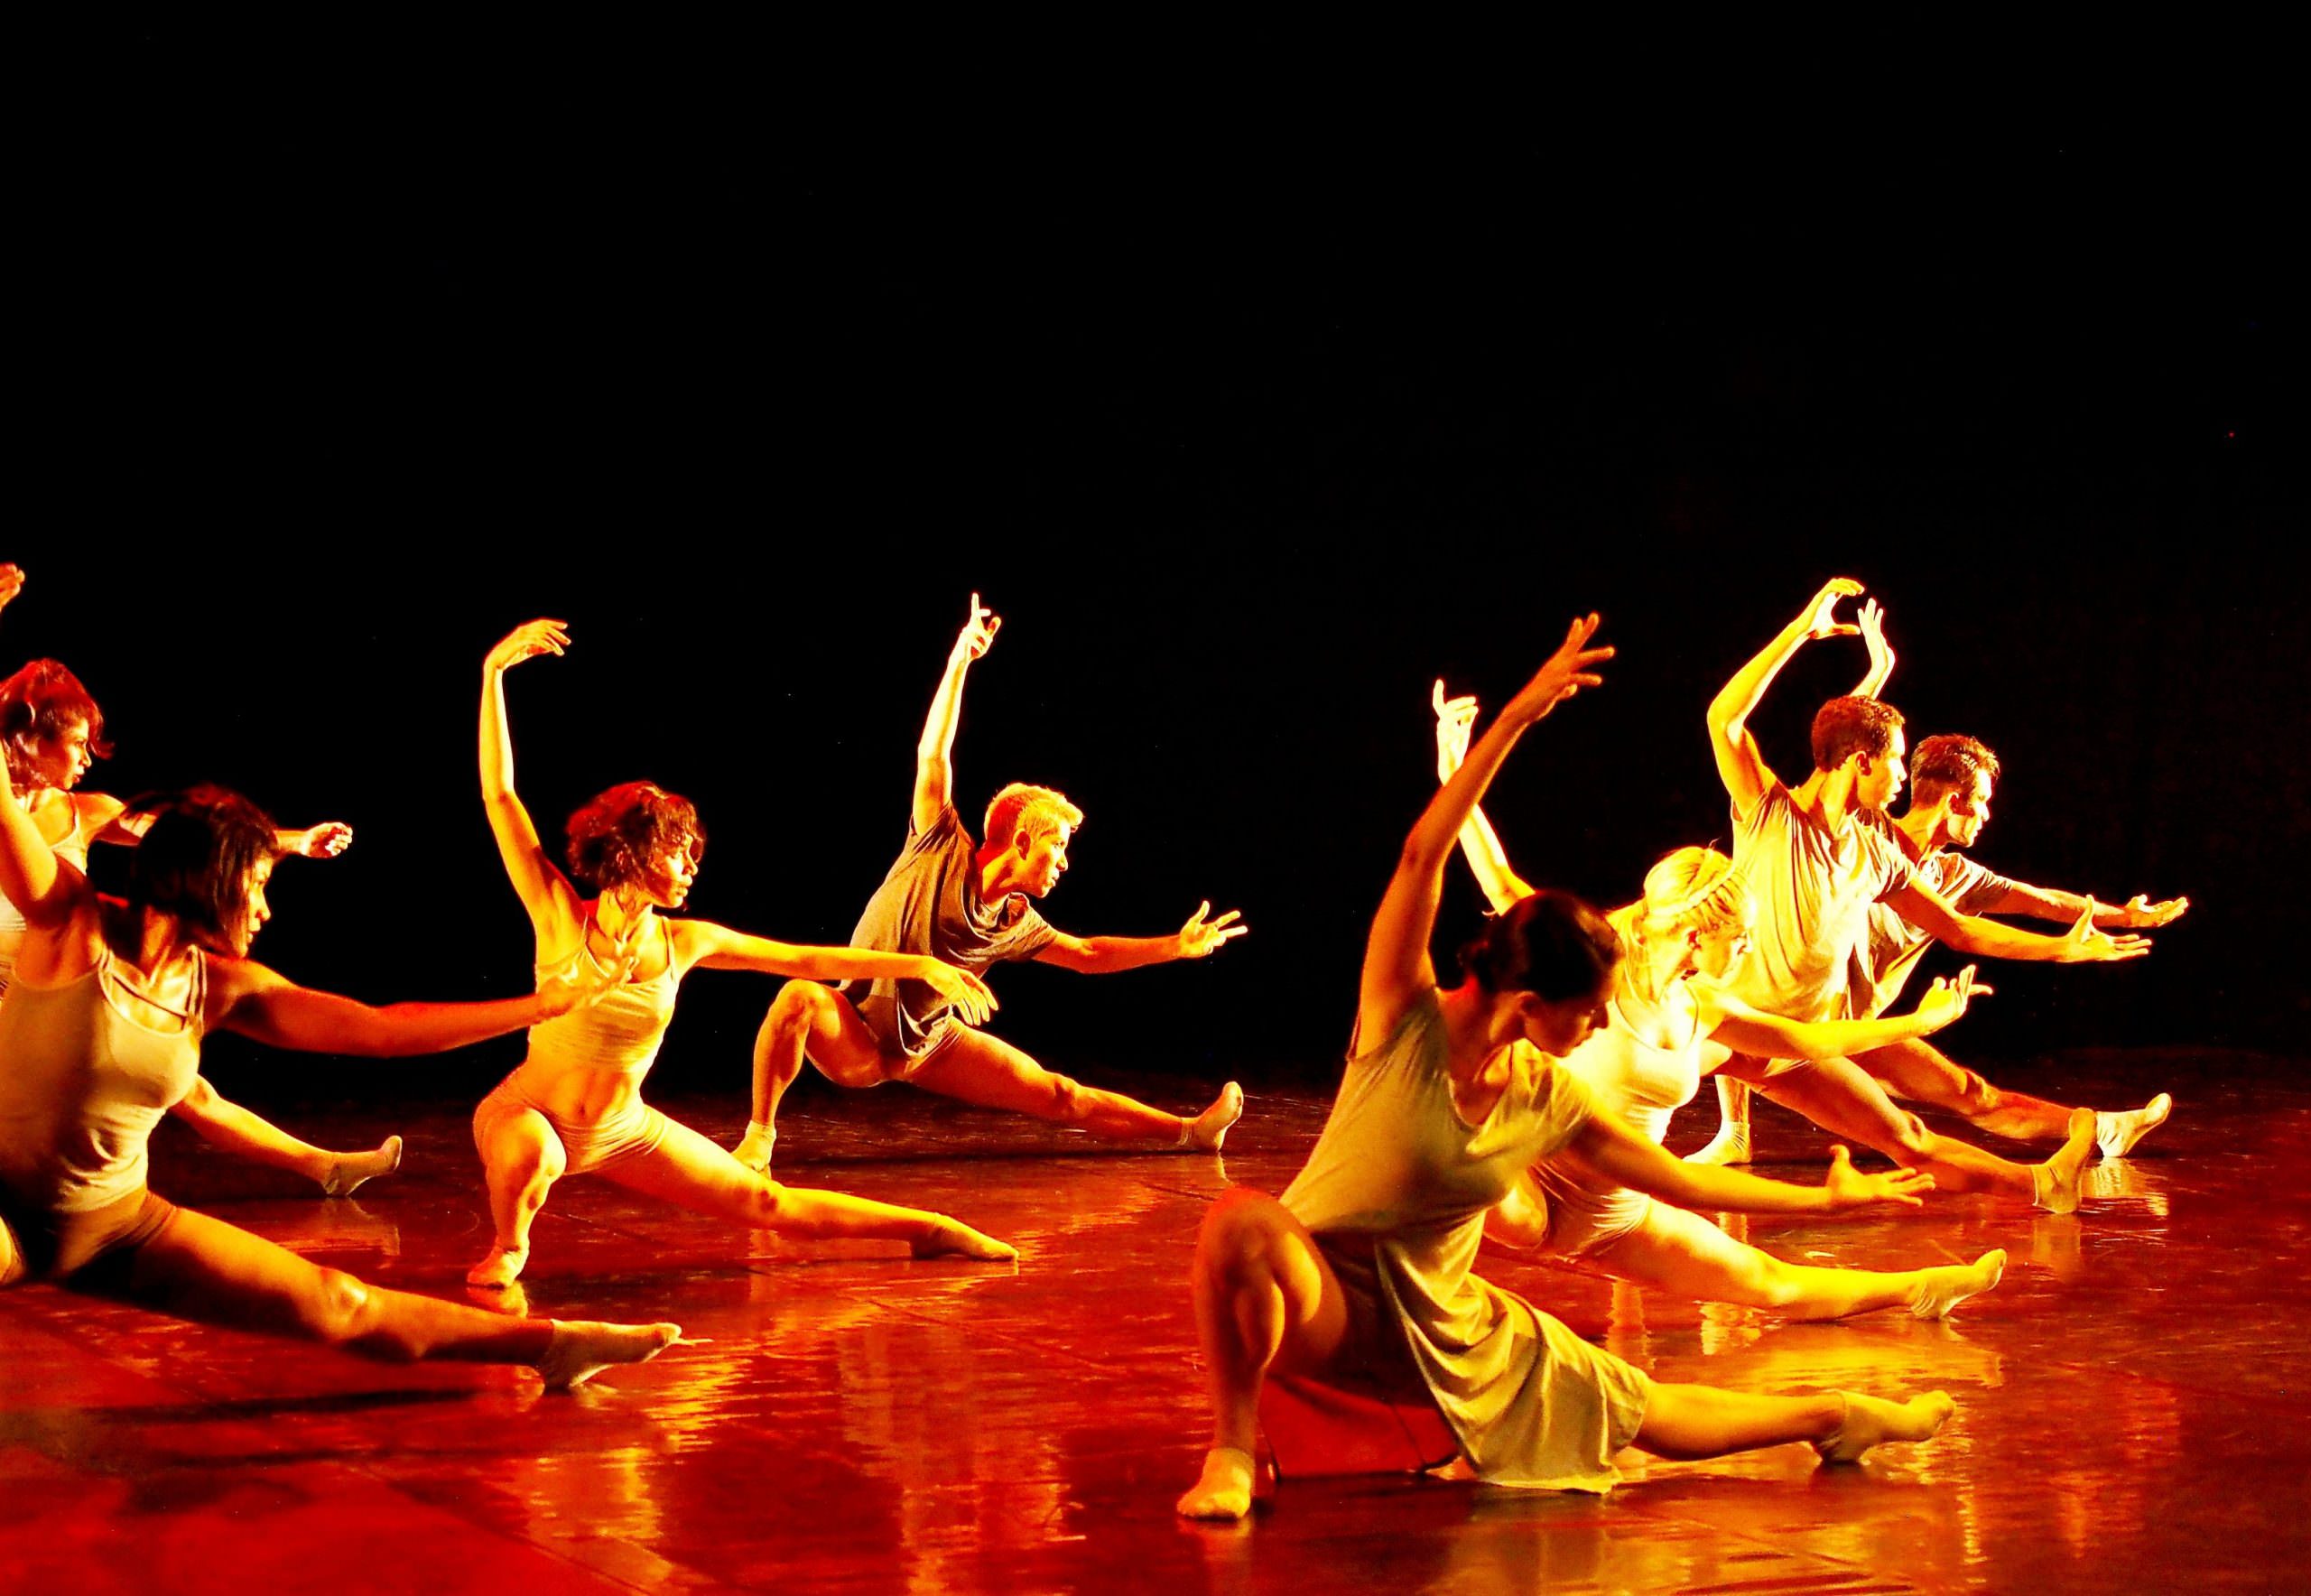 Teatro Amazonas traz programa duplo com música erudita e dança contemporânea nesta terça (15)